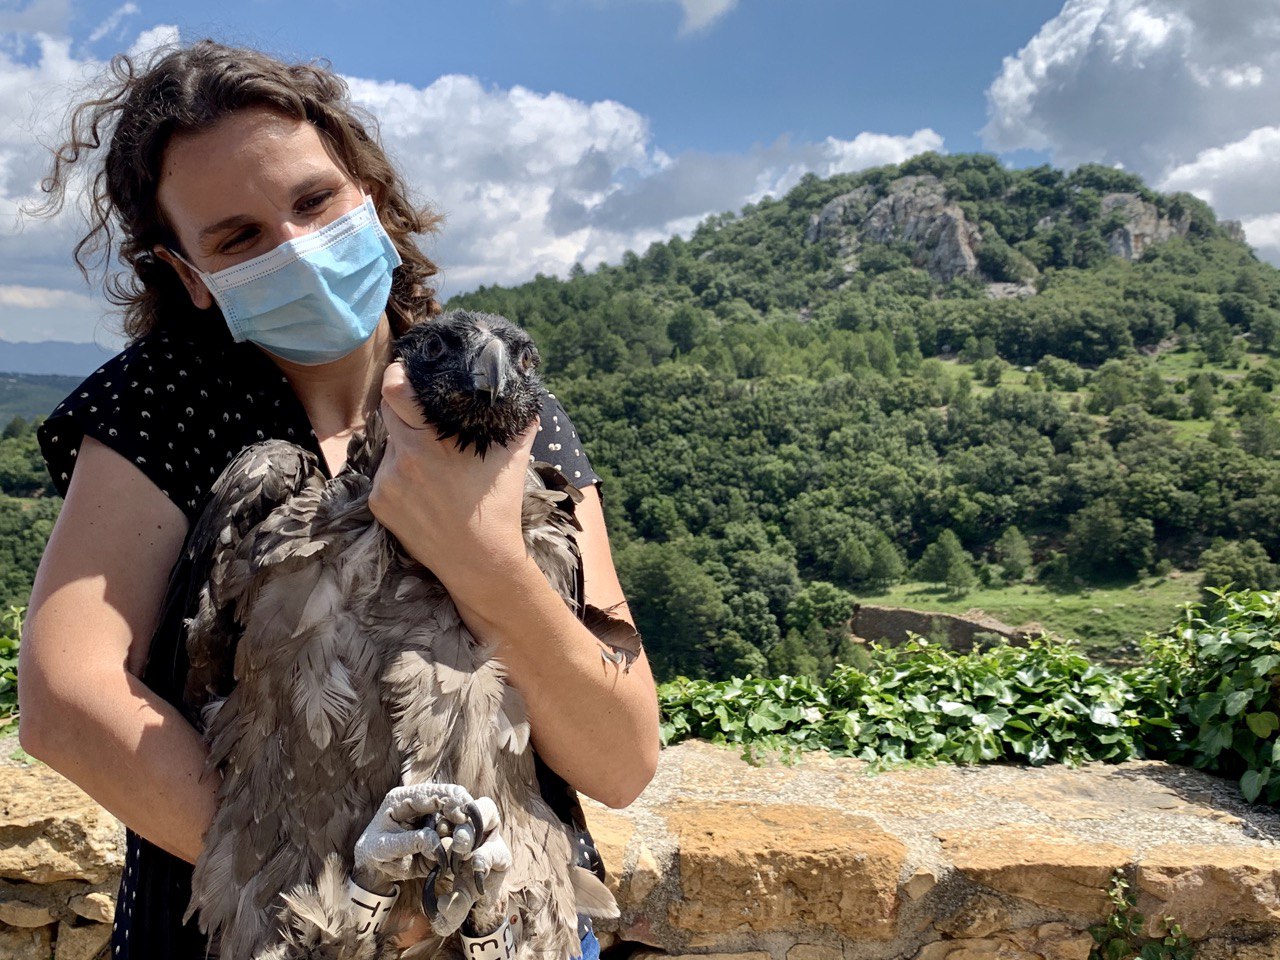 La secretaria autonómica de Emergencia Climática y Transición Ecológica, Paula Tuzón, ha participado en la liberación de dos crías de quebrantahuesos en el parque natural de la Tinença de Benifassà (Castellón). Imagen: Comunidad Valenciana